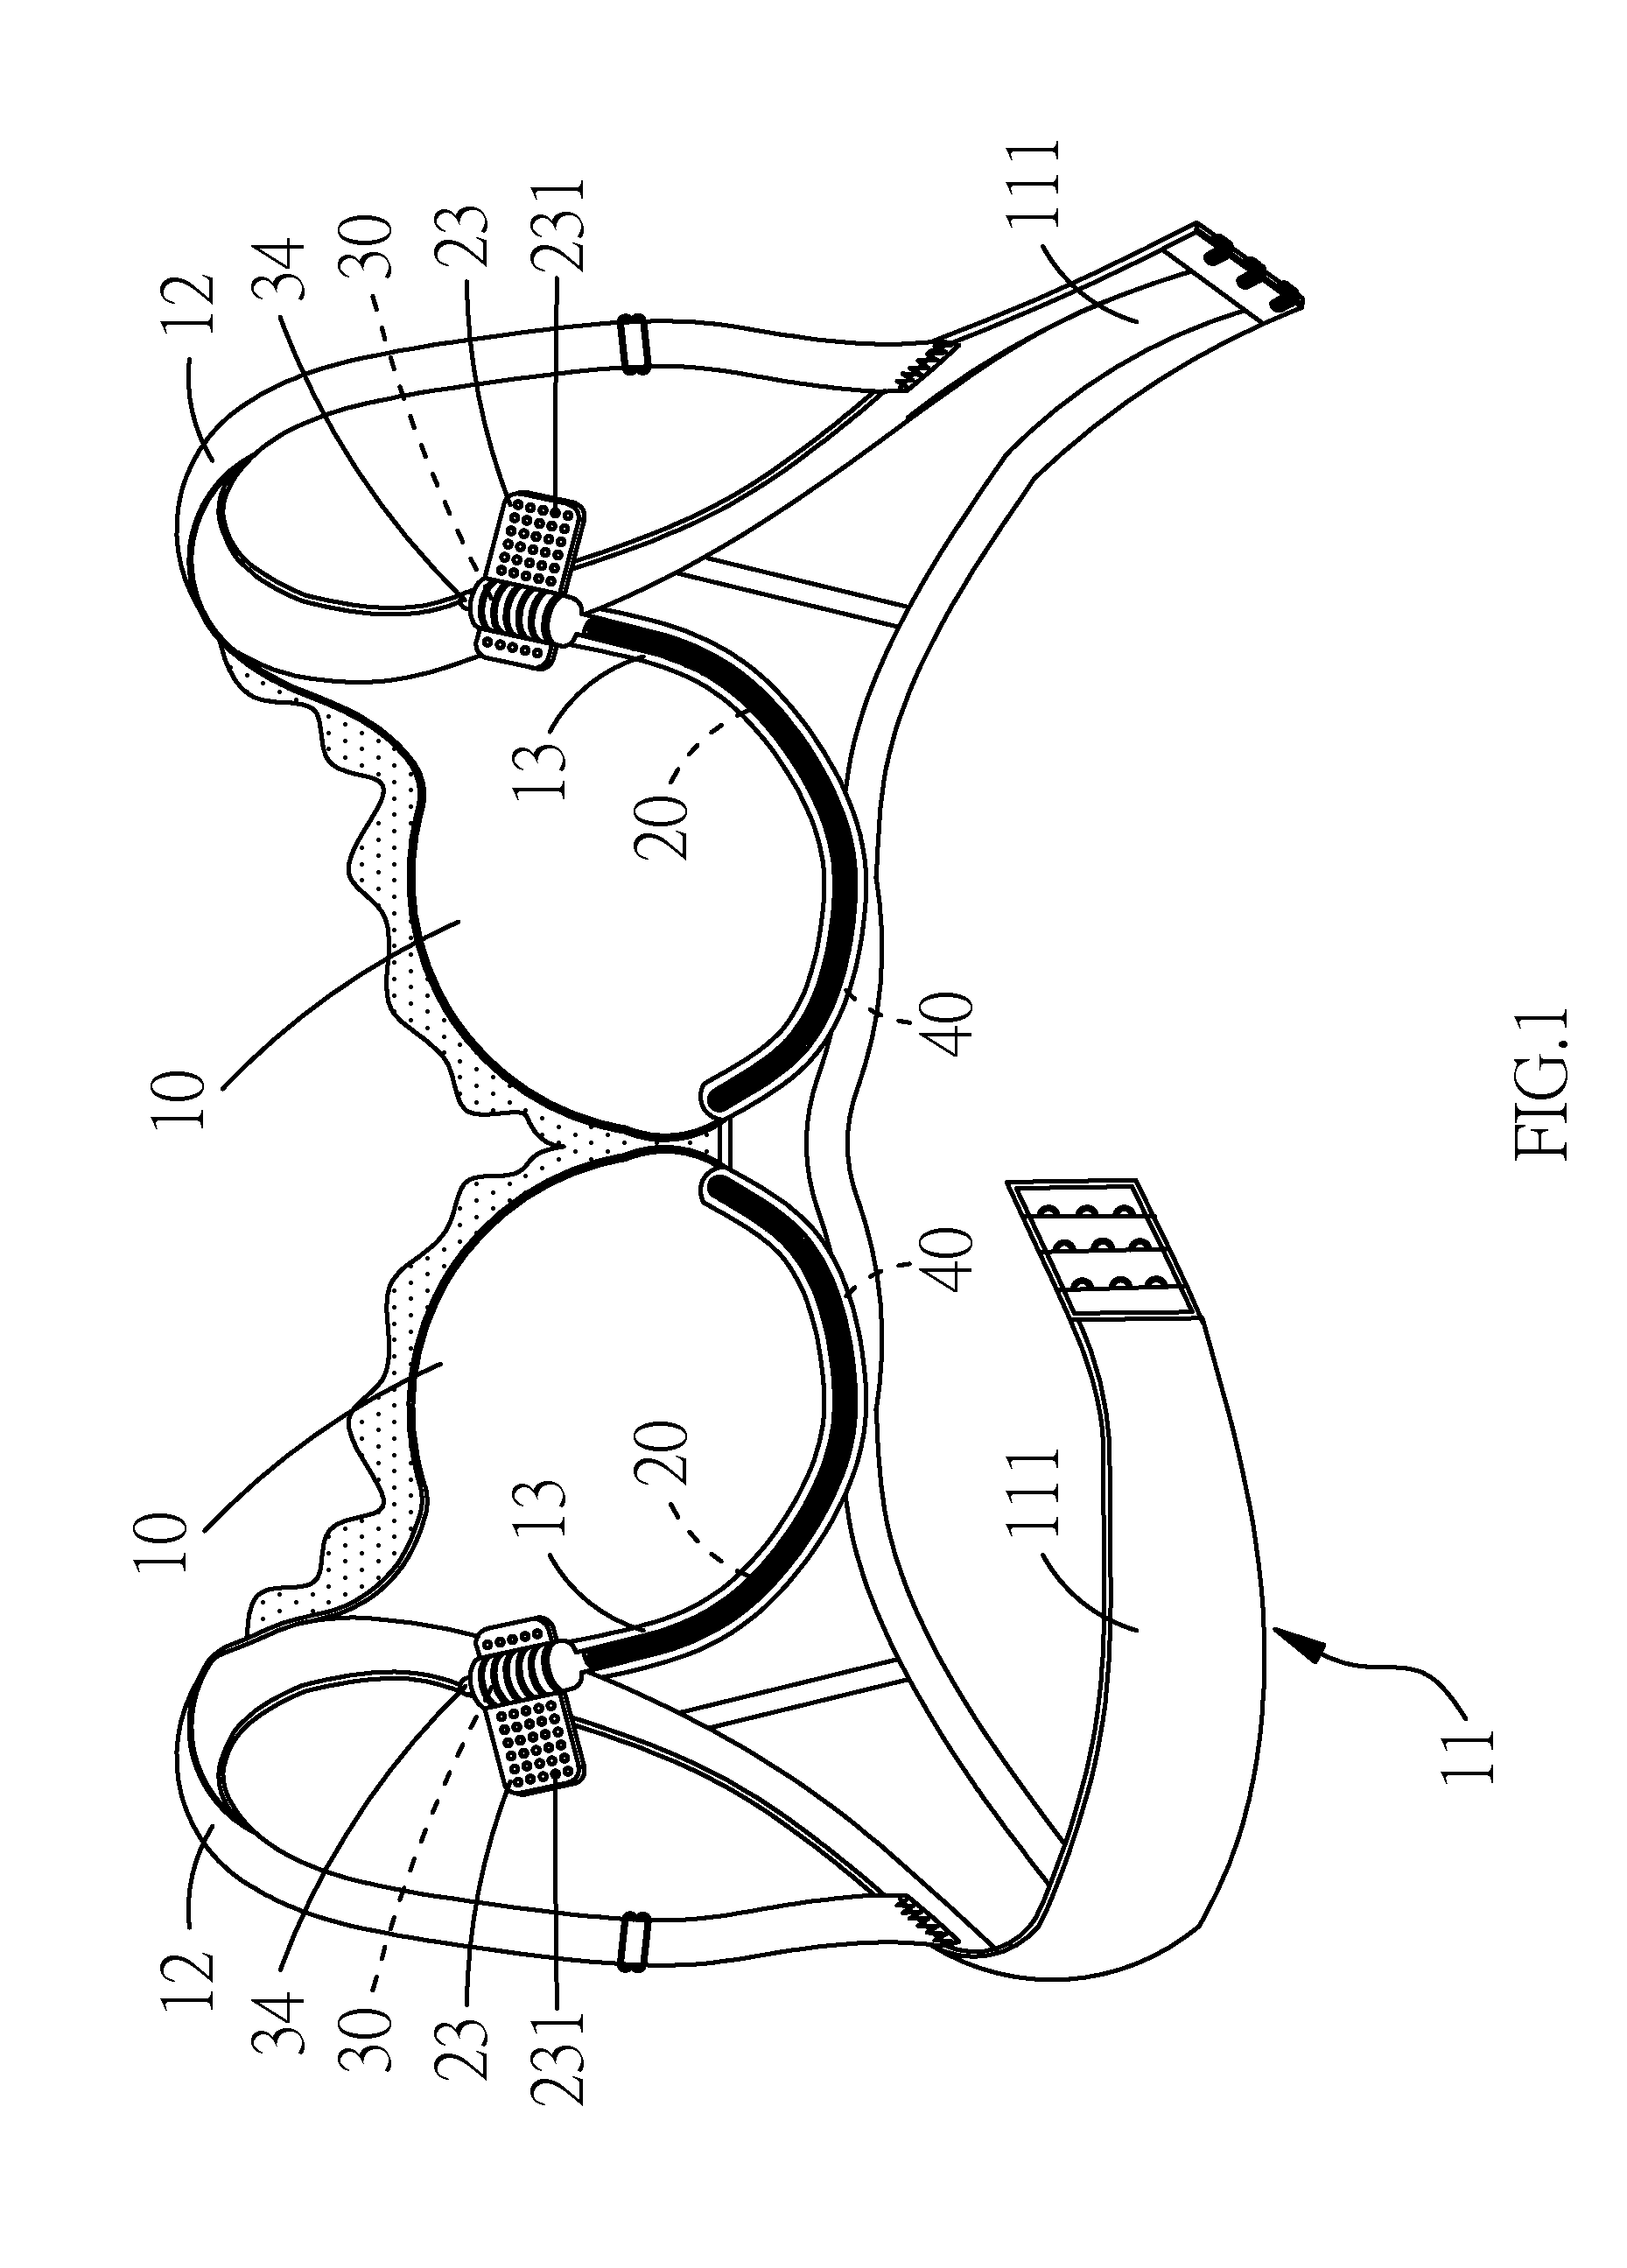 Brassiere structure